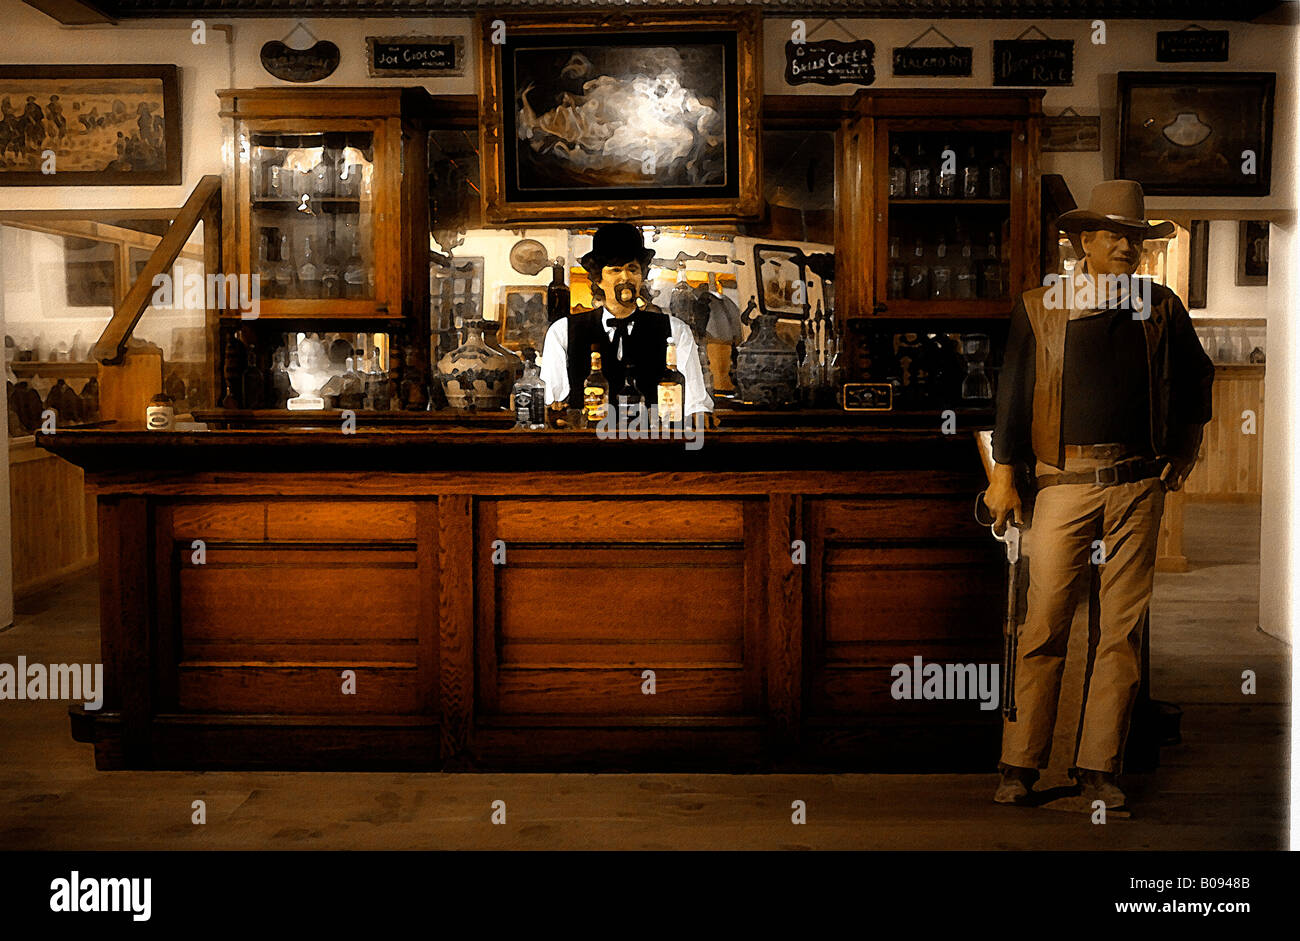 Bild der Prüfpuppe Barkeeper hinter der Theke ein Vintage Westernsaloon mit einer Pappe Figur des John Wayne Stand in der Nähe. Stockfoto